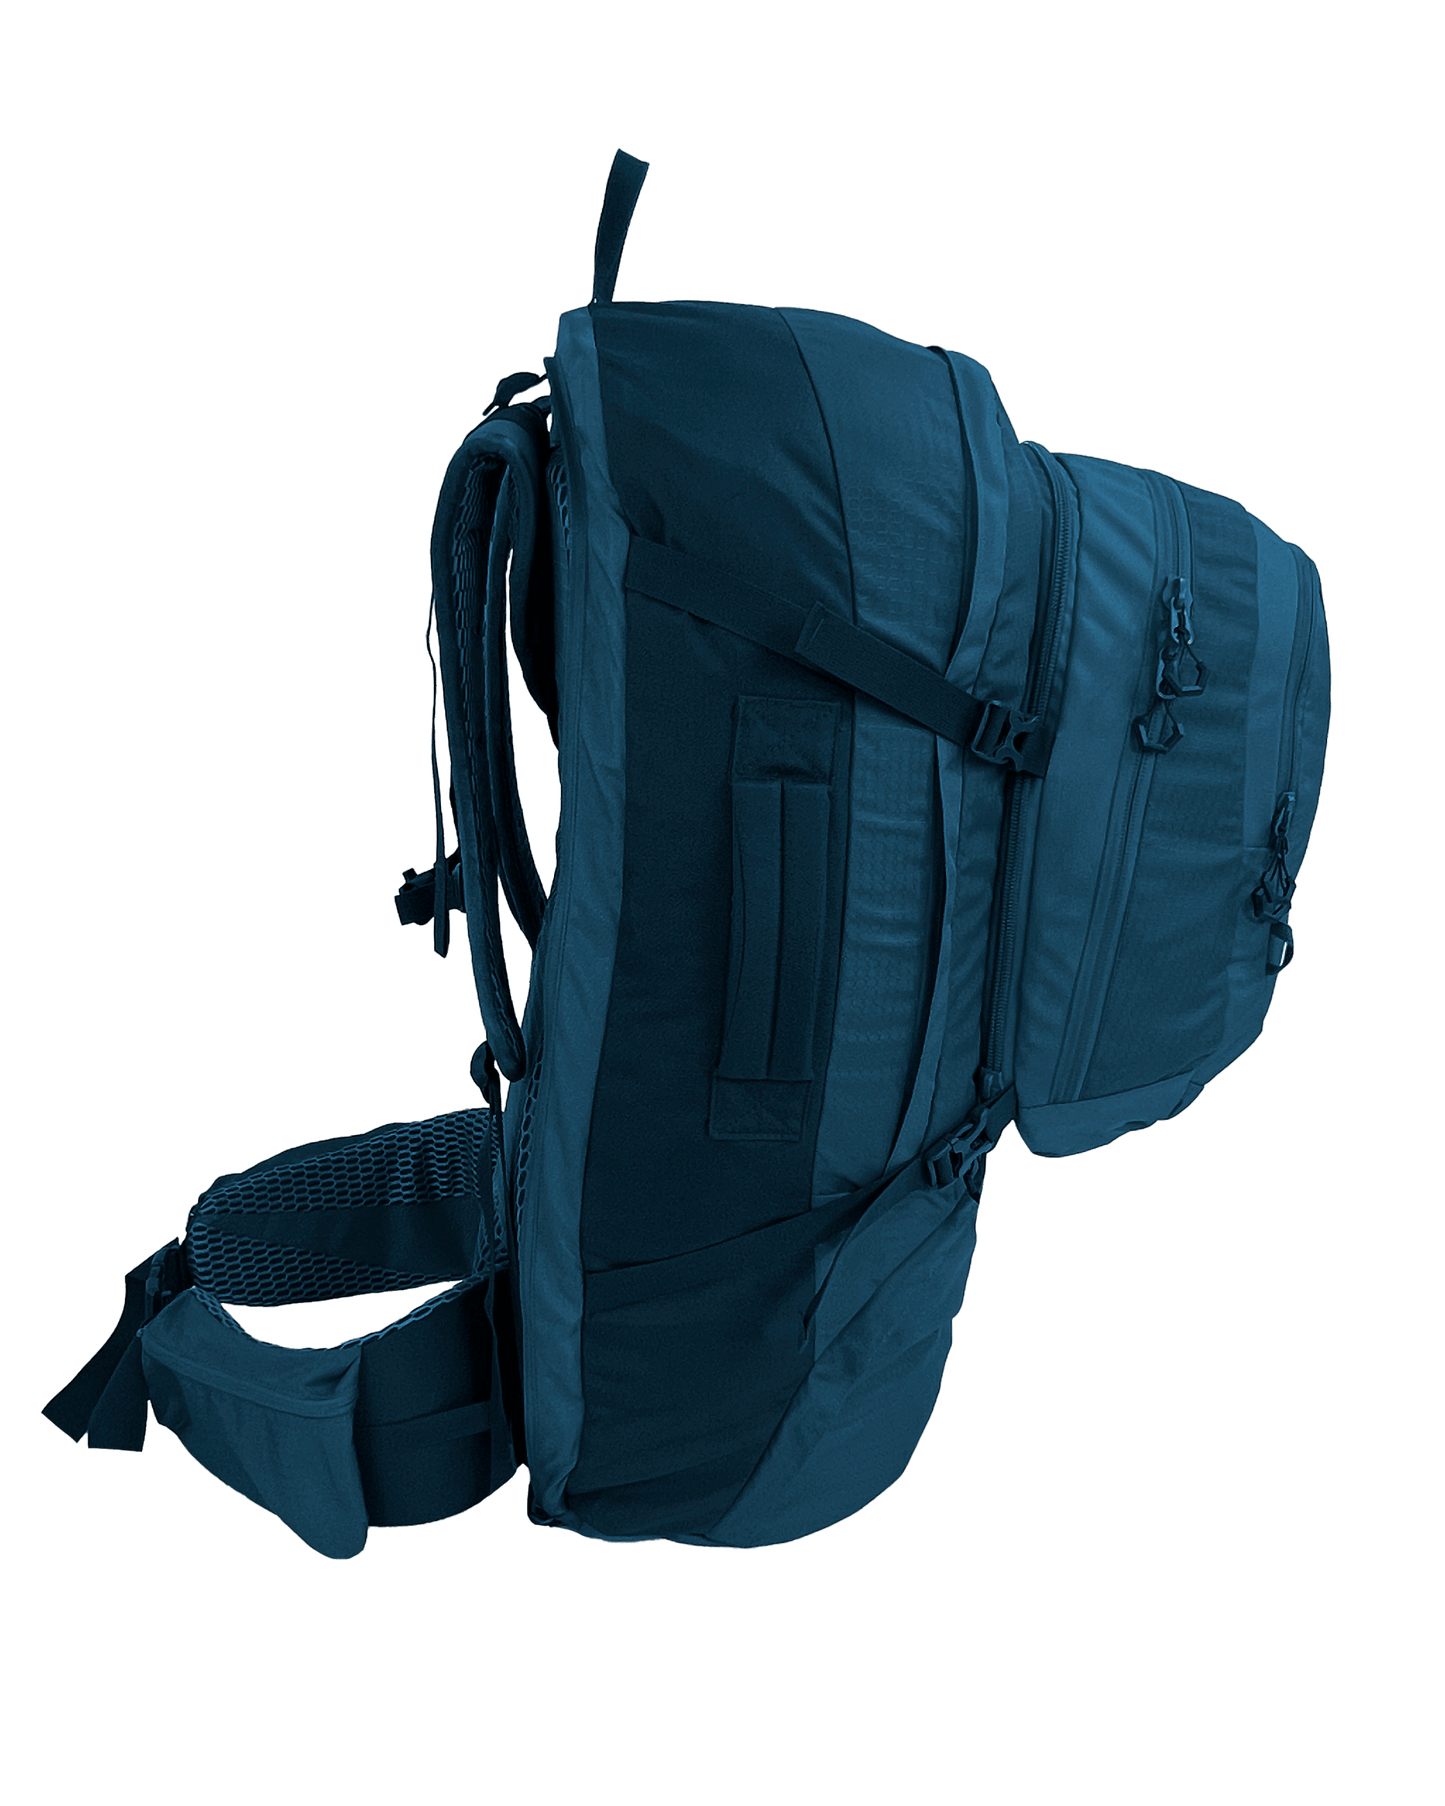 
                  
                    Fulham II 60 Travel Backpack
                  
                